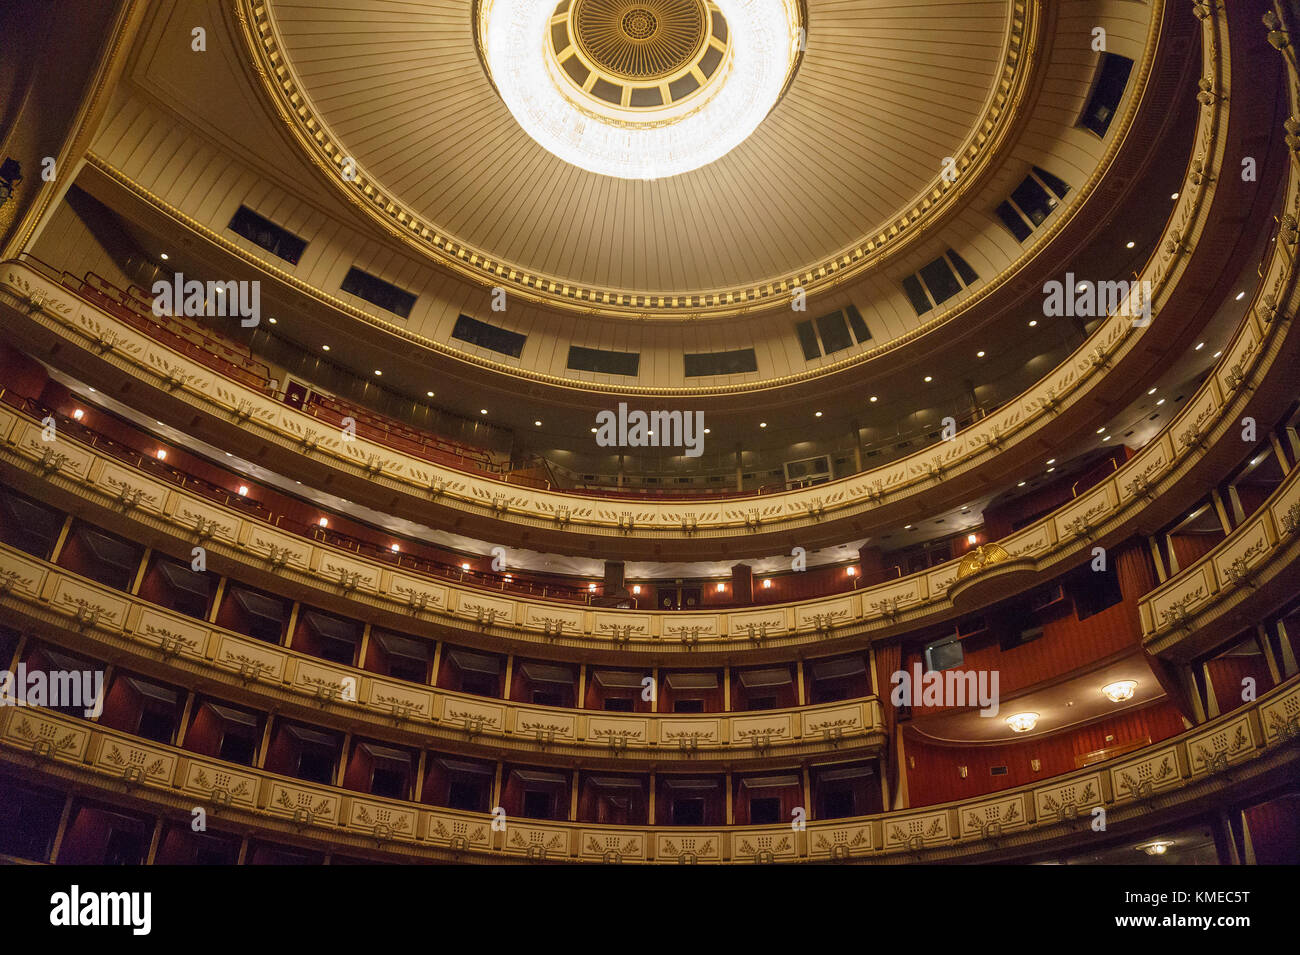 Intérieur de l'Opéra national de Vienne. Wiener Staatsoper produit 50-70 opéras et ballets dans environ 300 performances par an. Vienne, Autriche, Europe Banque D'Images